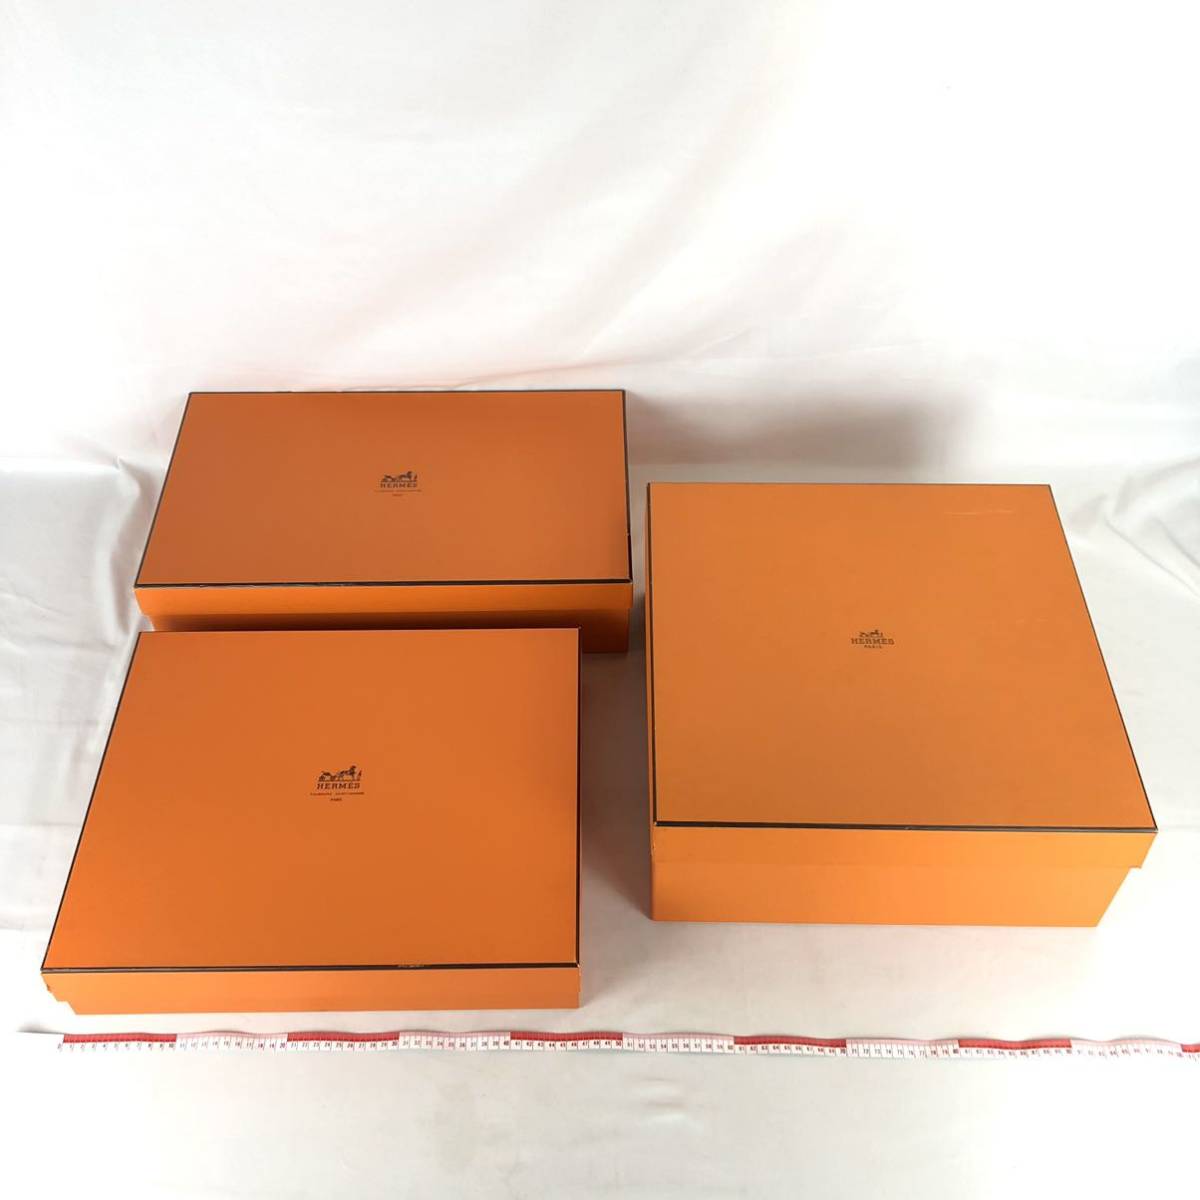 HERMES エルメス空き箱空箱BOX ボックスブランドオレンジBOX 3点セット